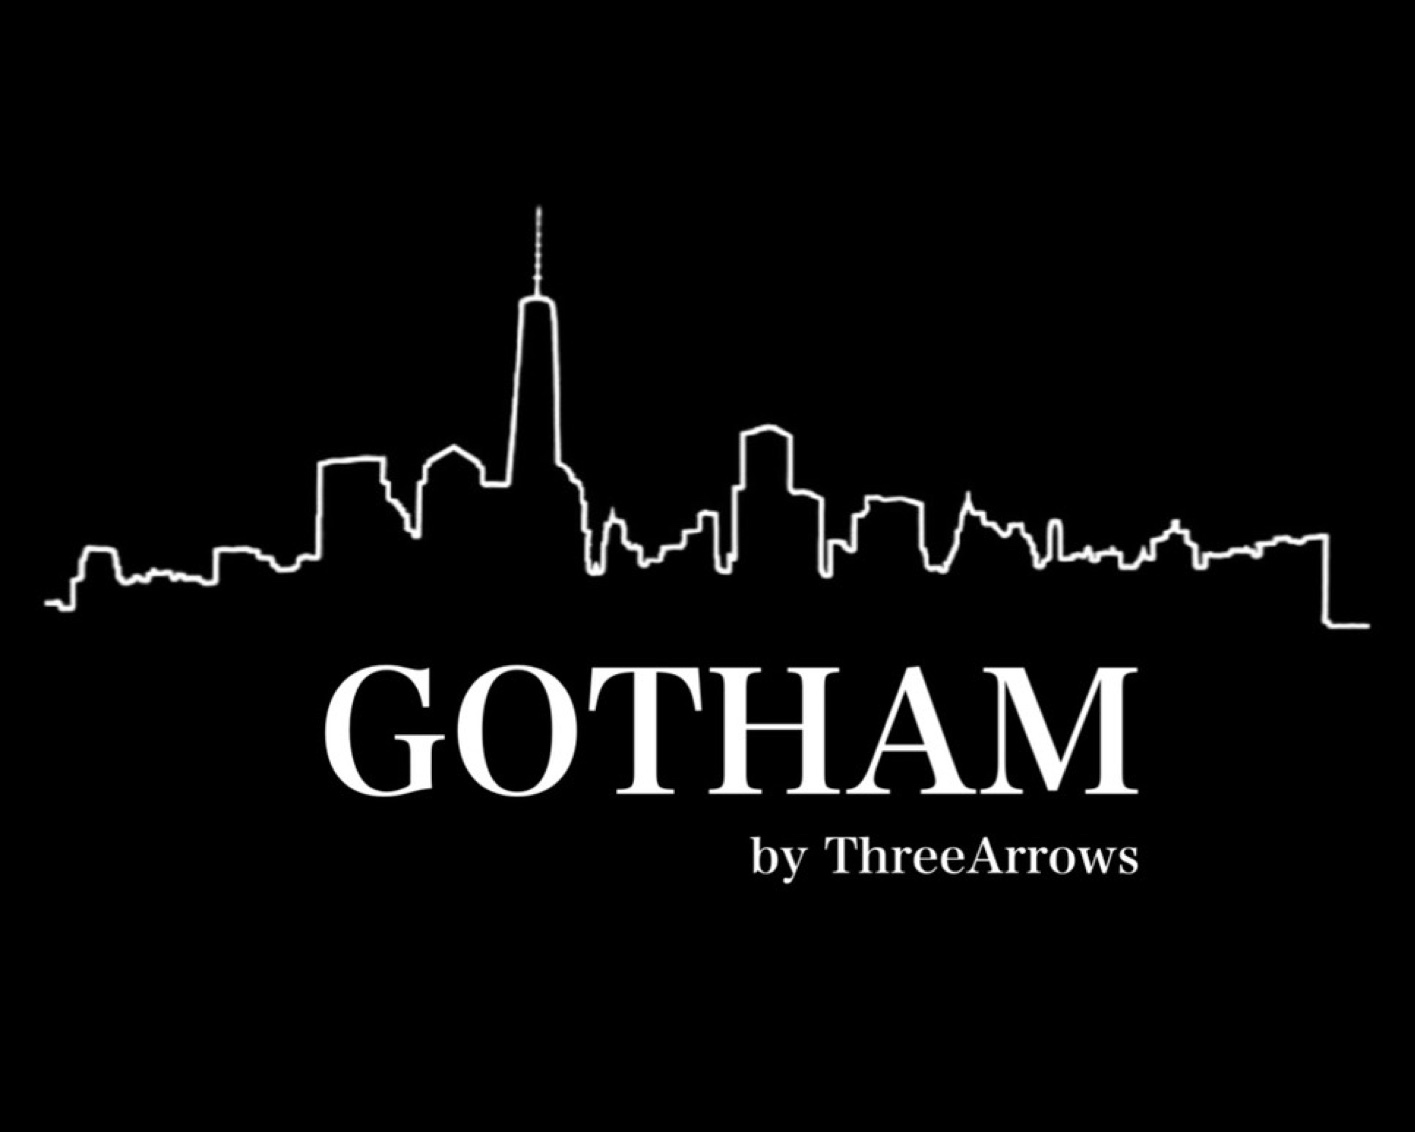 GOTHAM by ThreeArrows